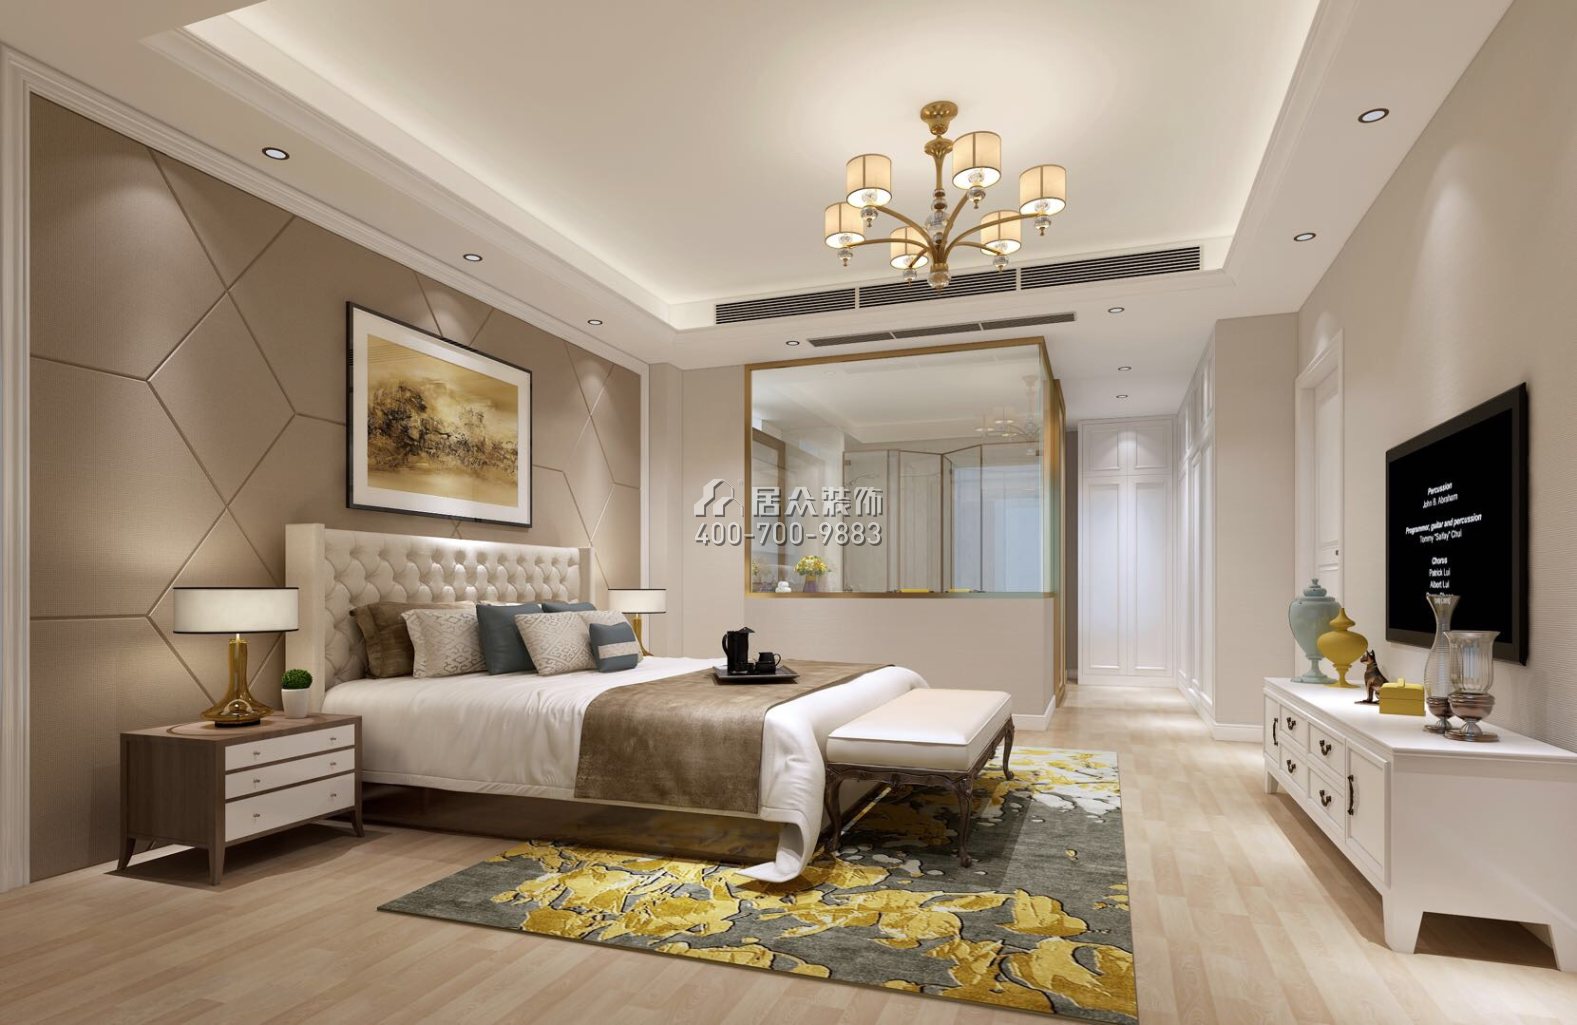 觀瀾湖比佩亞大宅129平方米現代簡約風格平層戶型臥室裝修效果圖